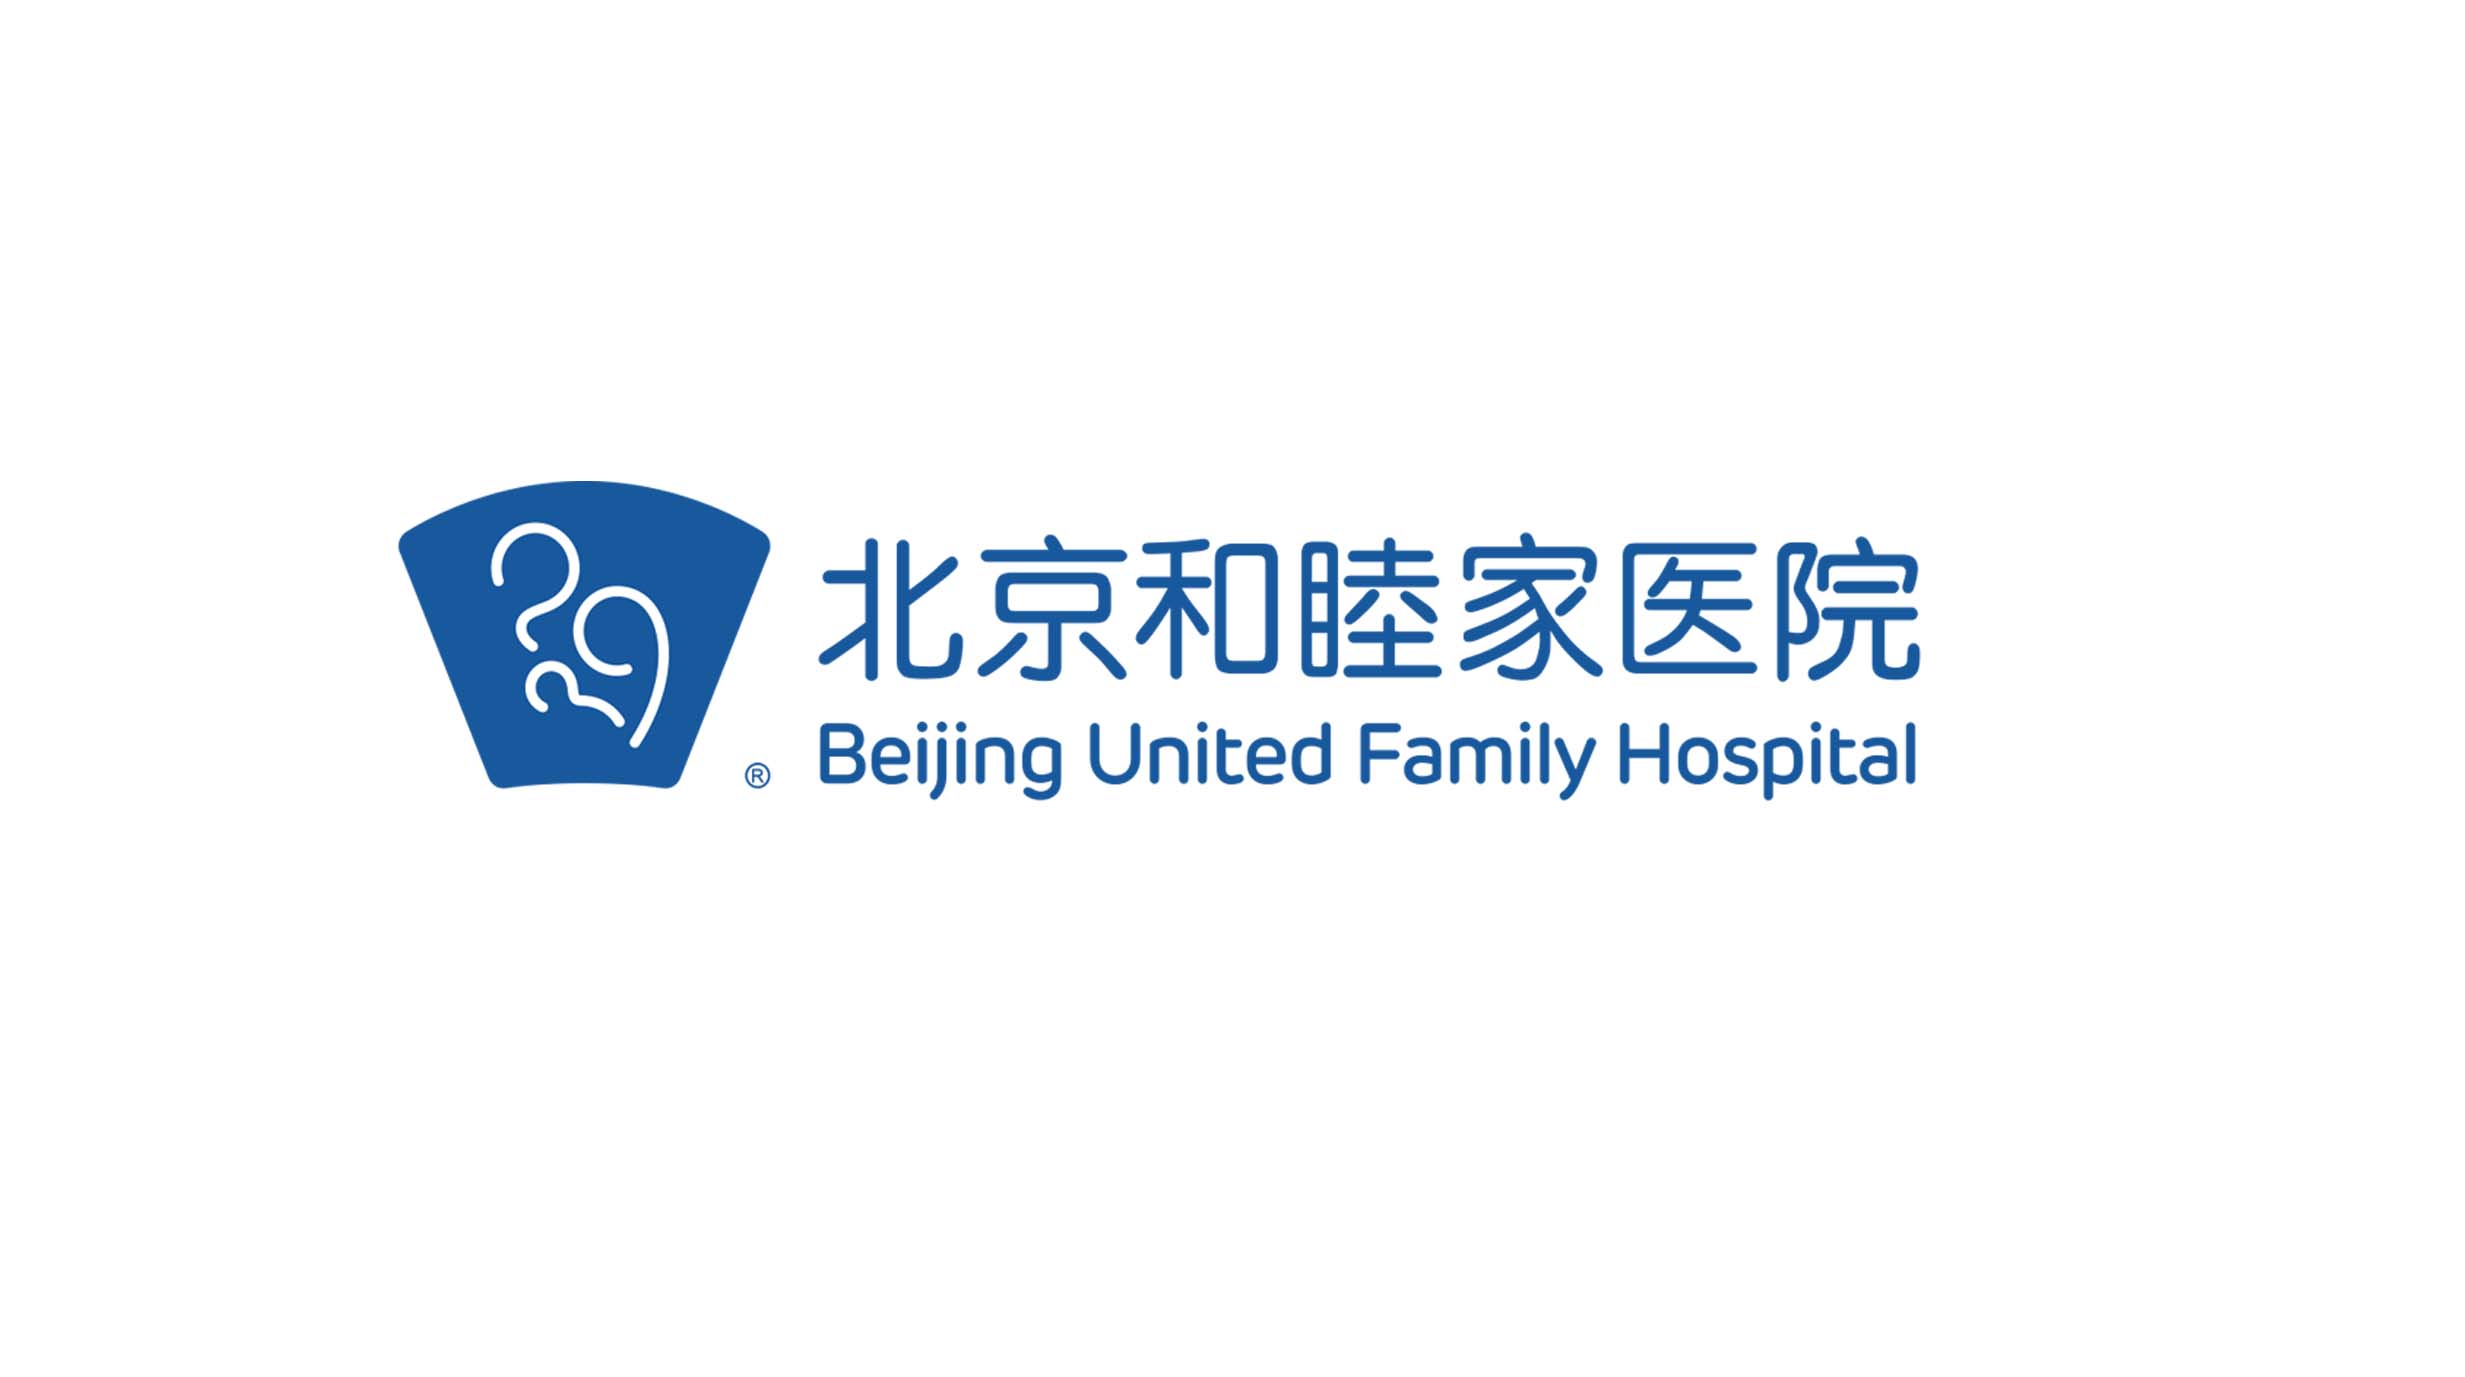 Beijing-United-Family-Hospital--special-thanks.jpg